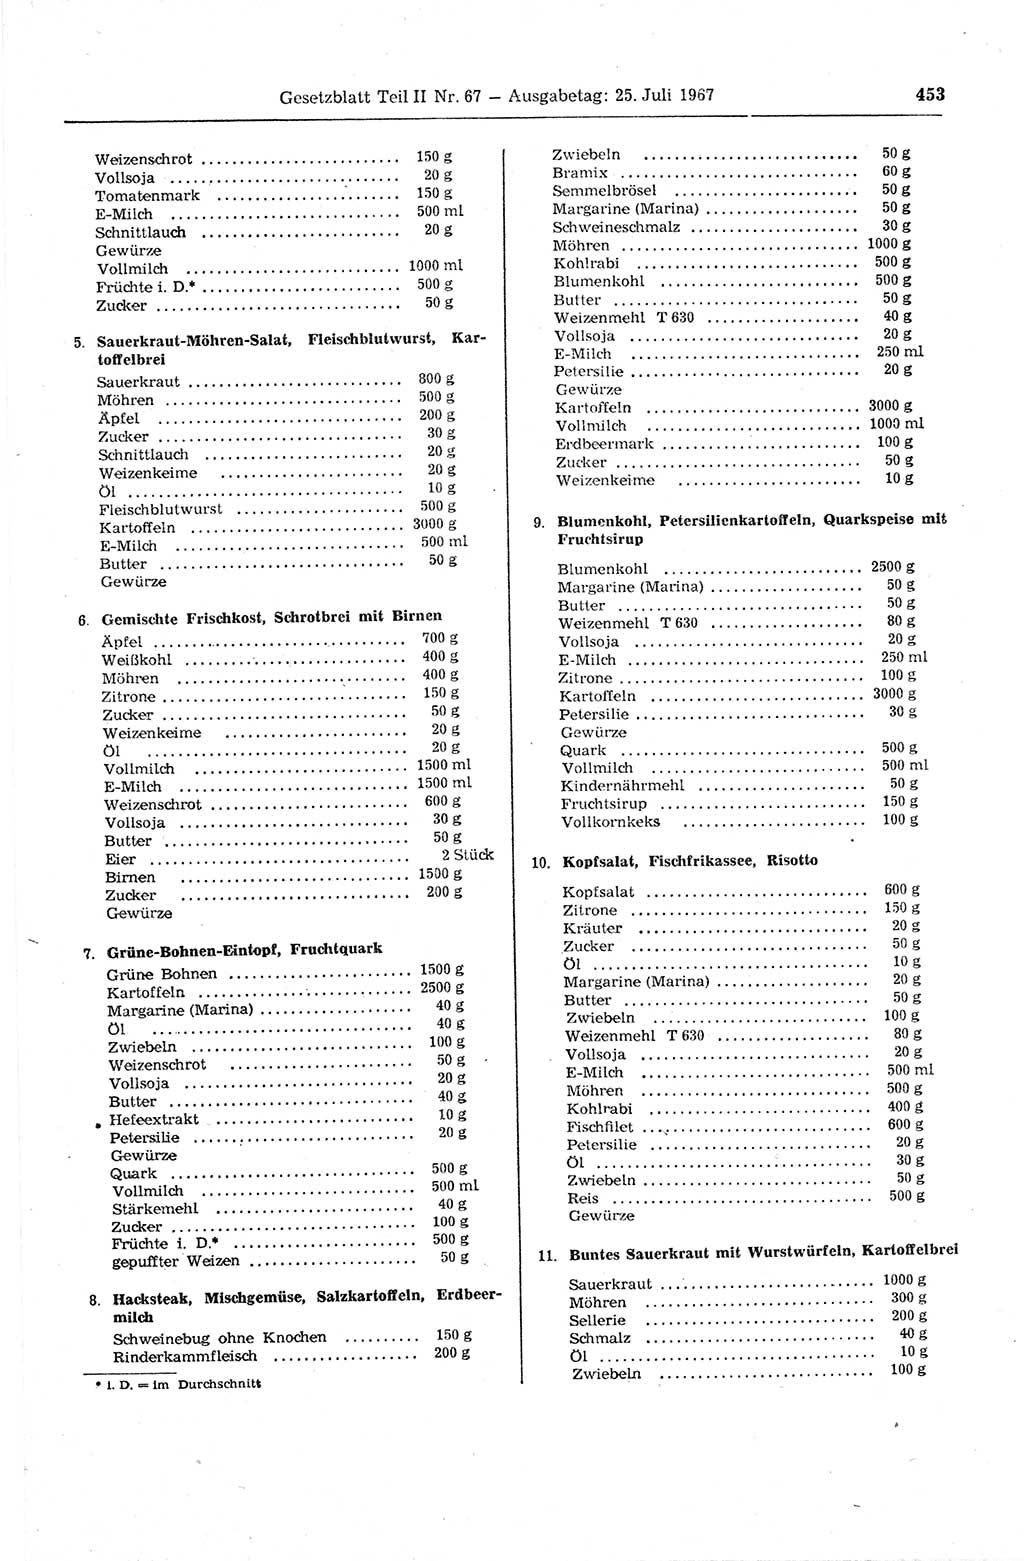 Gesetzblatt (GBl.) der Deutschen Demokratischen Republik (DDR) Teil ⅠⅠ 1967, Seite 453 (GBl. DDR ⅠⅠ 1967, S. 453)